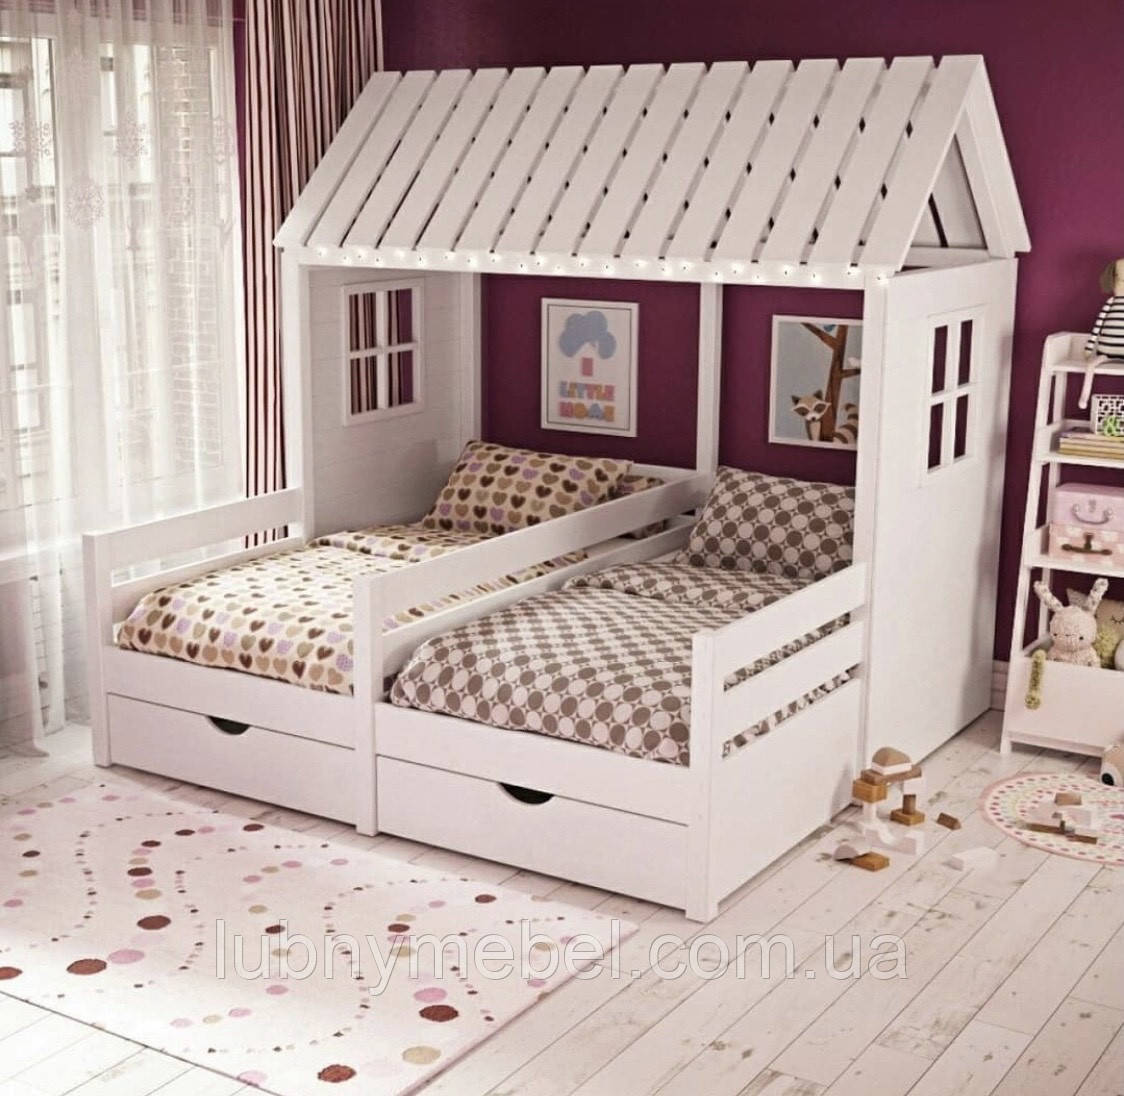 Ліжко дерев'яне Макси2-плюс